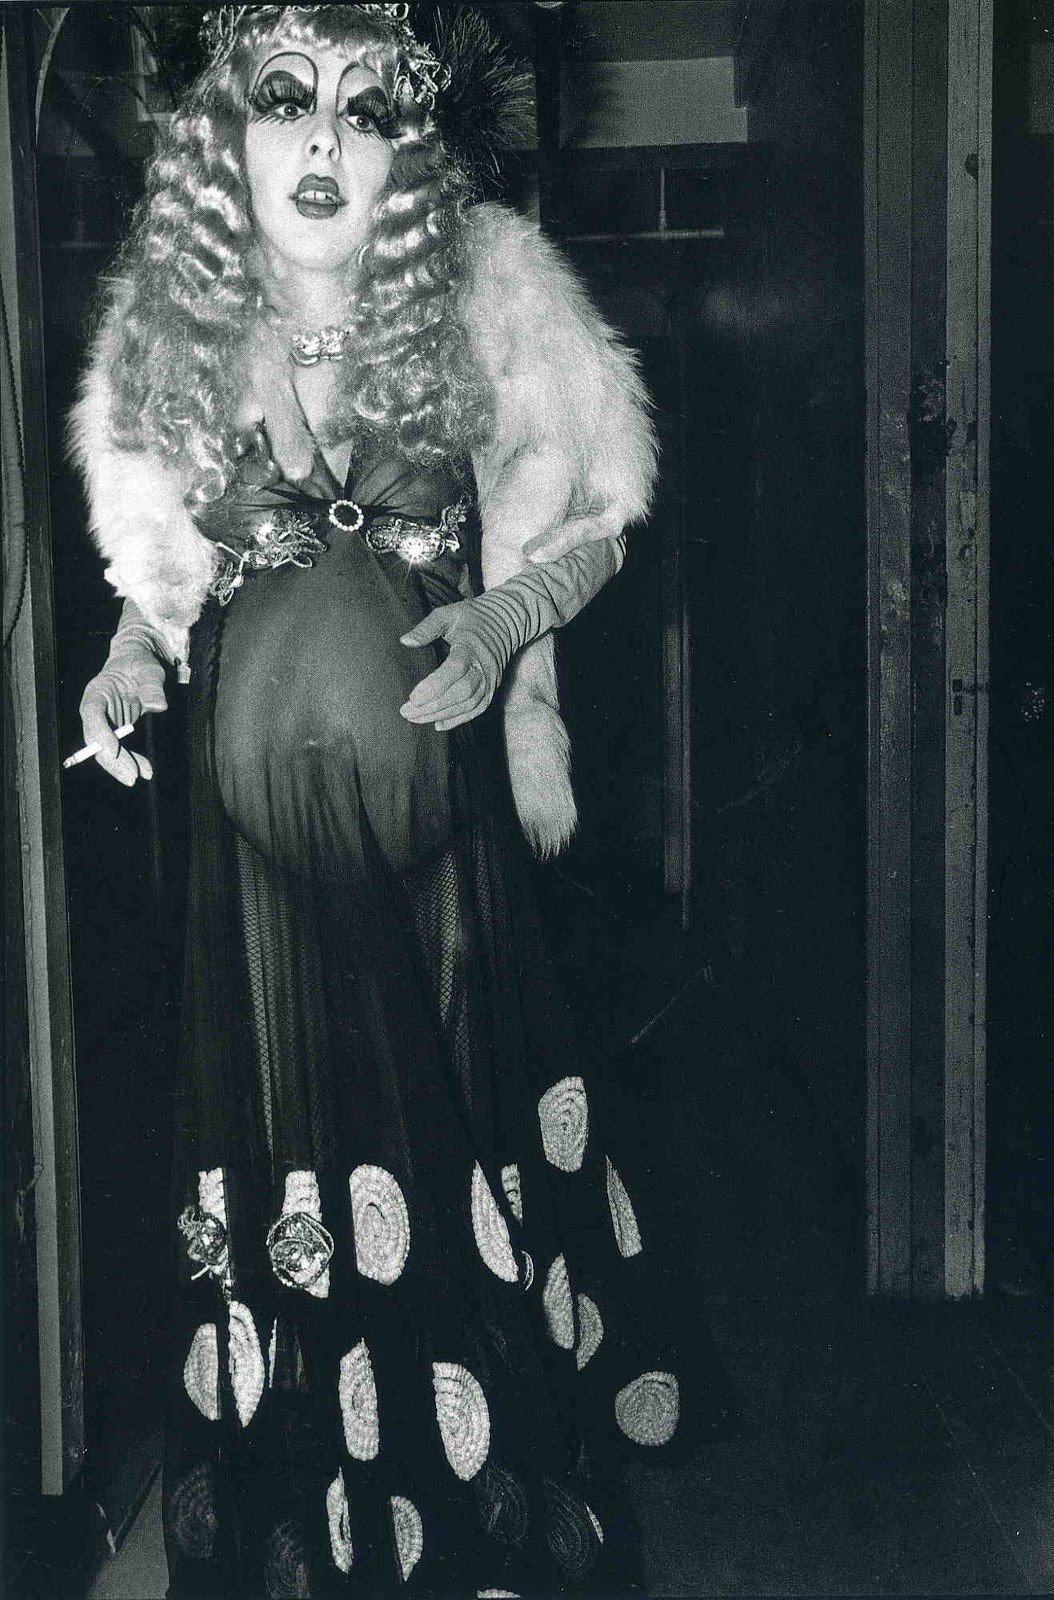 За кулисами шоу трансвеститов, Нью-Йорк, 1971. Фотограф Леонард Фрид